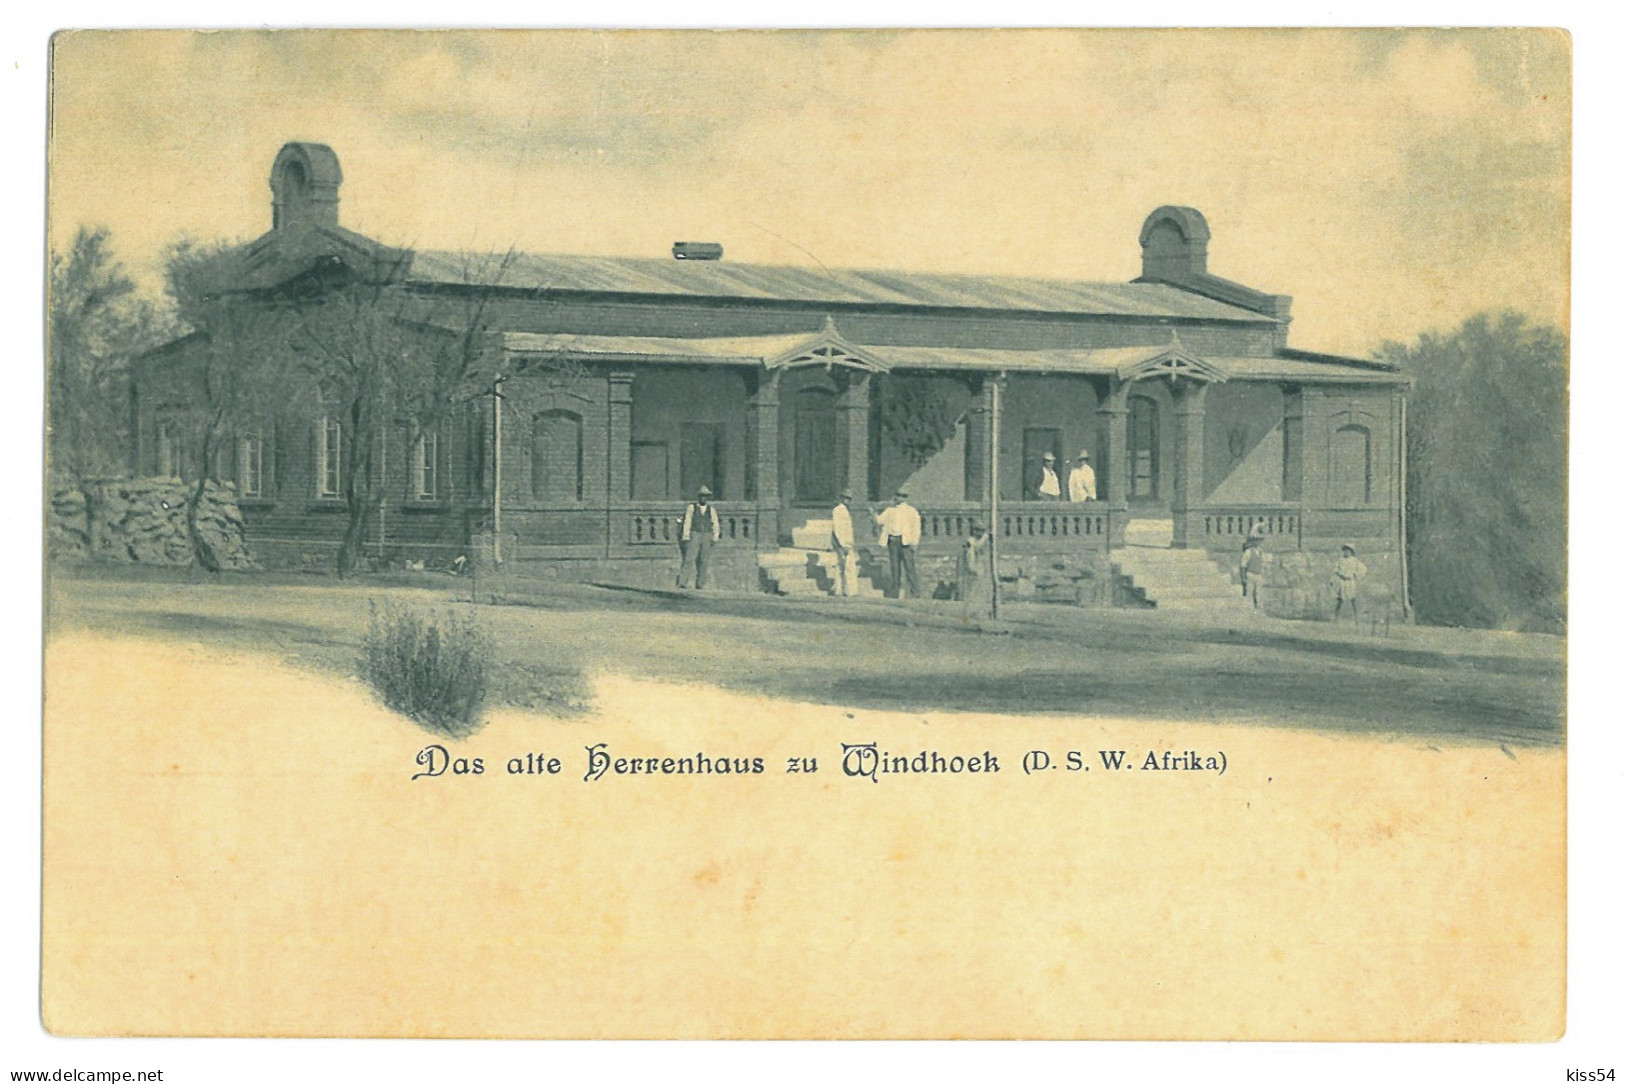 NAM 1 - 21496 WINDHOEK Old Mansion, (D.S.W. Afrika, Namibia) - Old Postcard - Unused  - Namibie